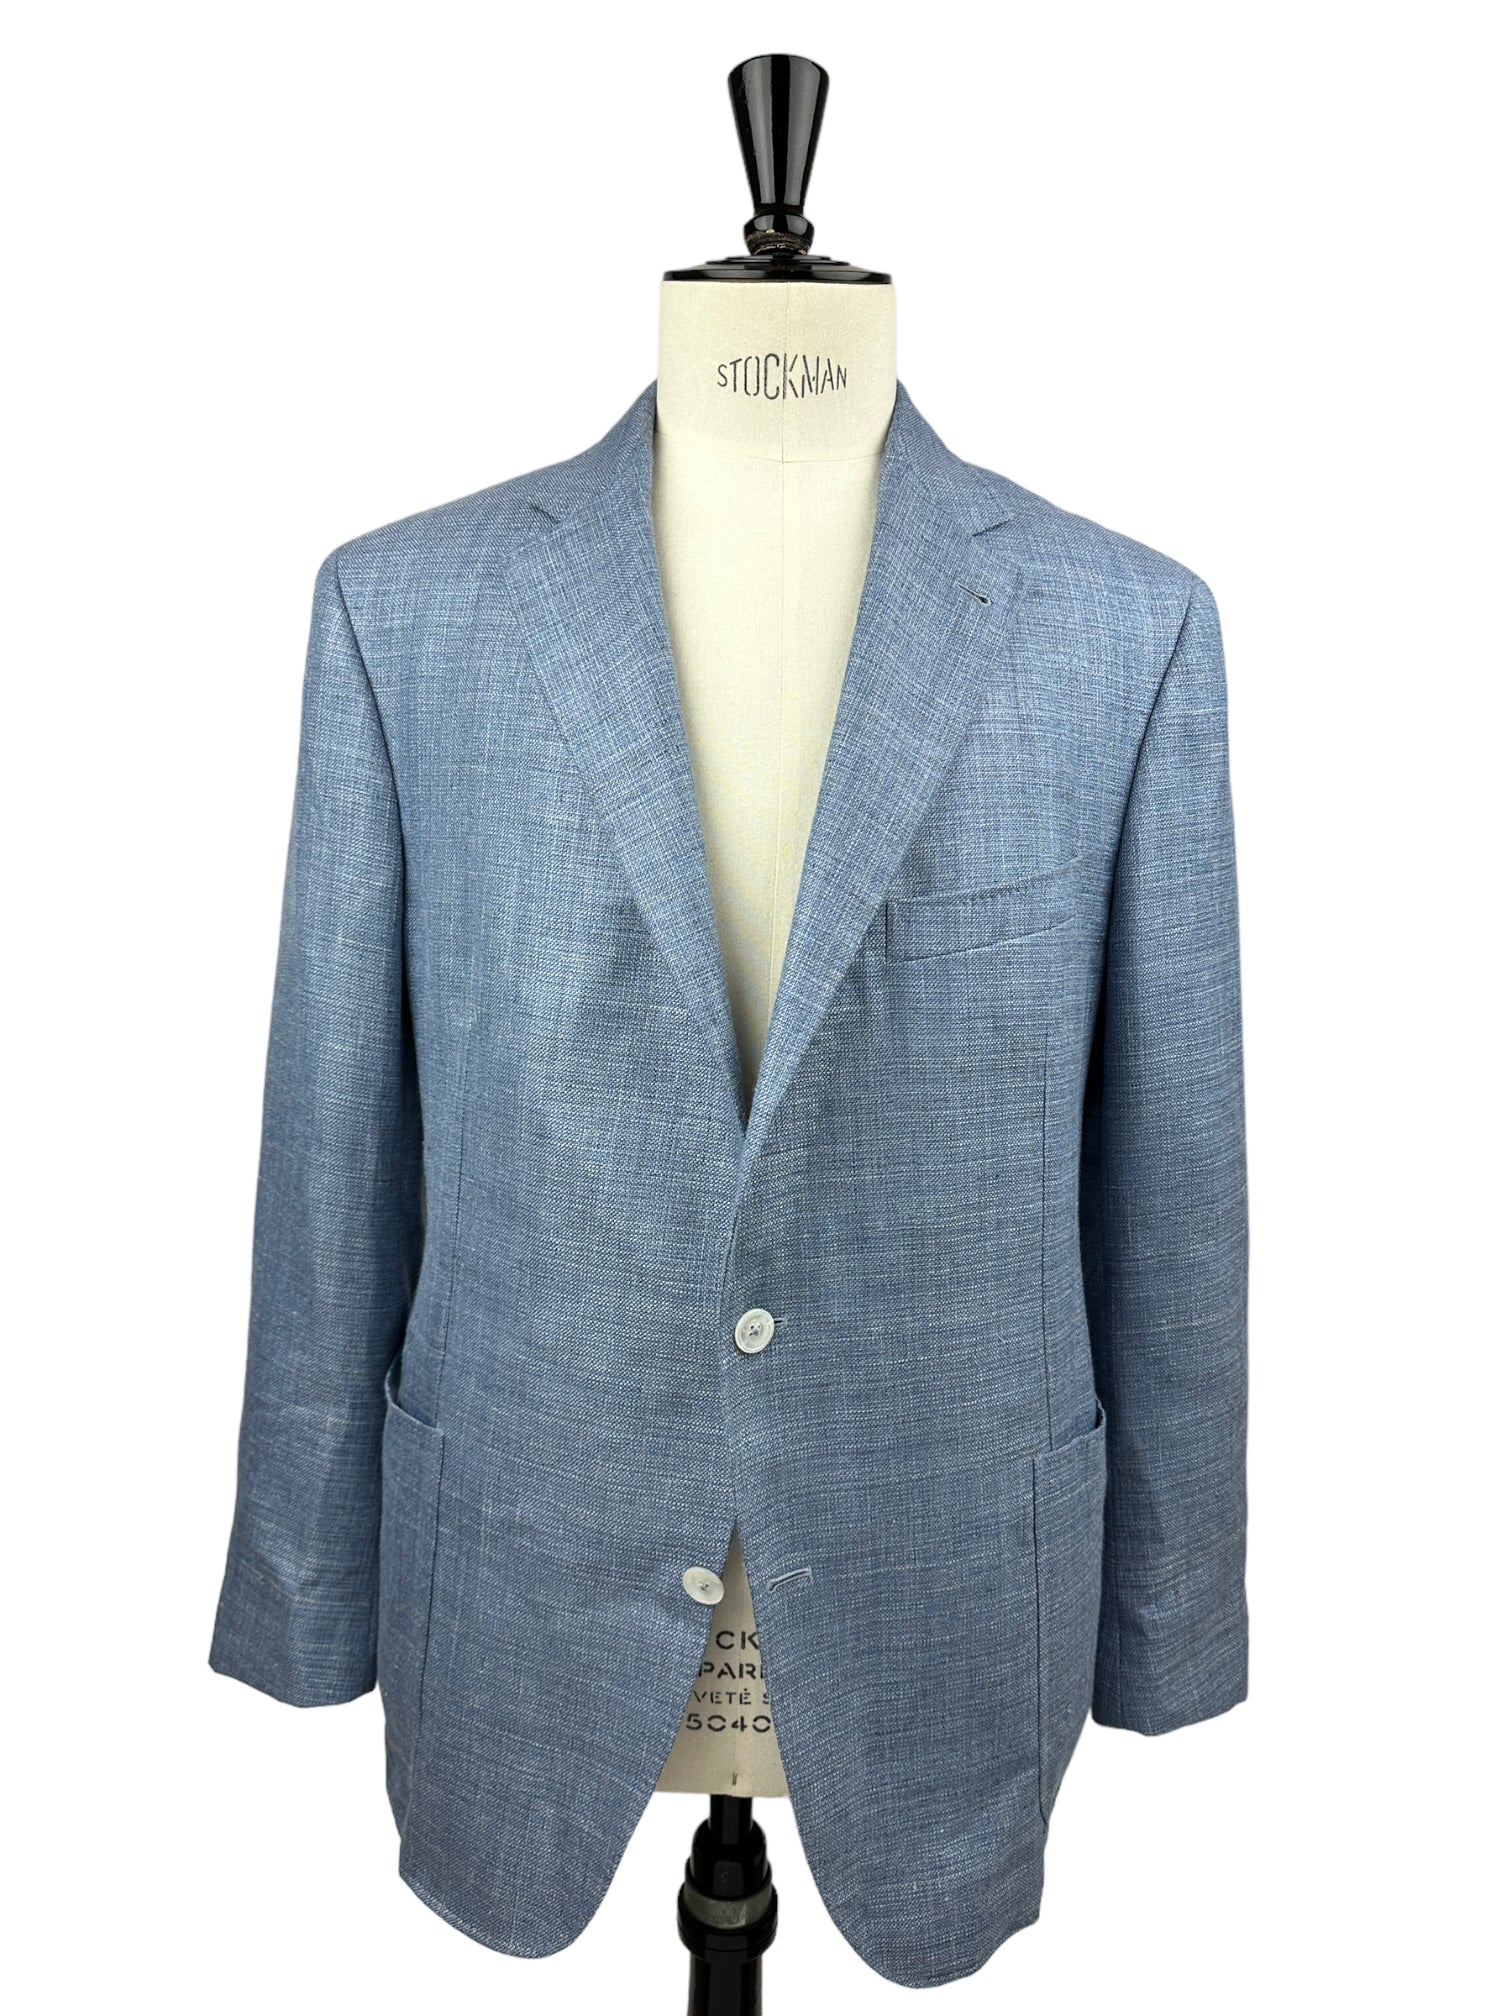 Canali lichtblauw jasje van wol, linnen en zijde